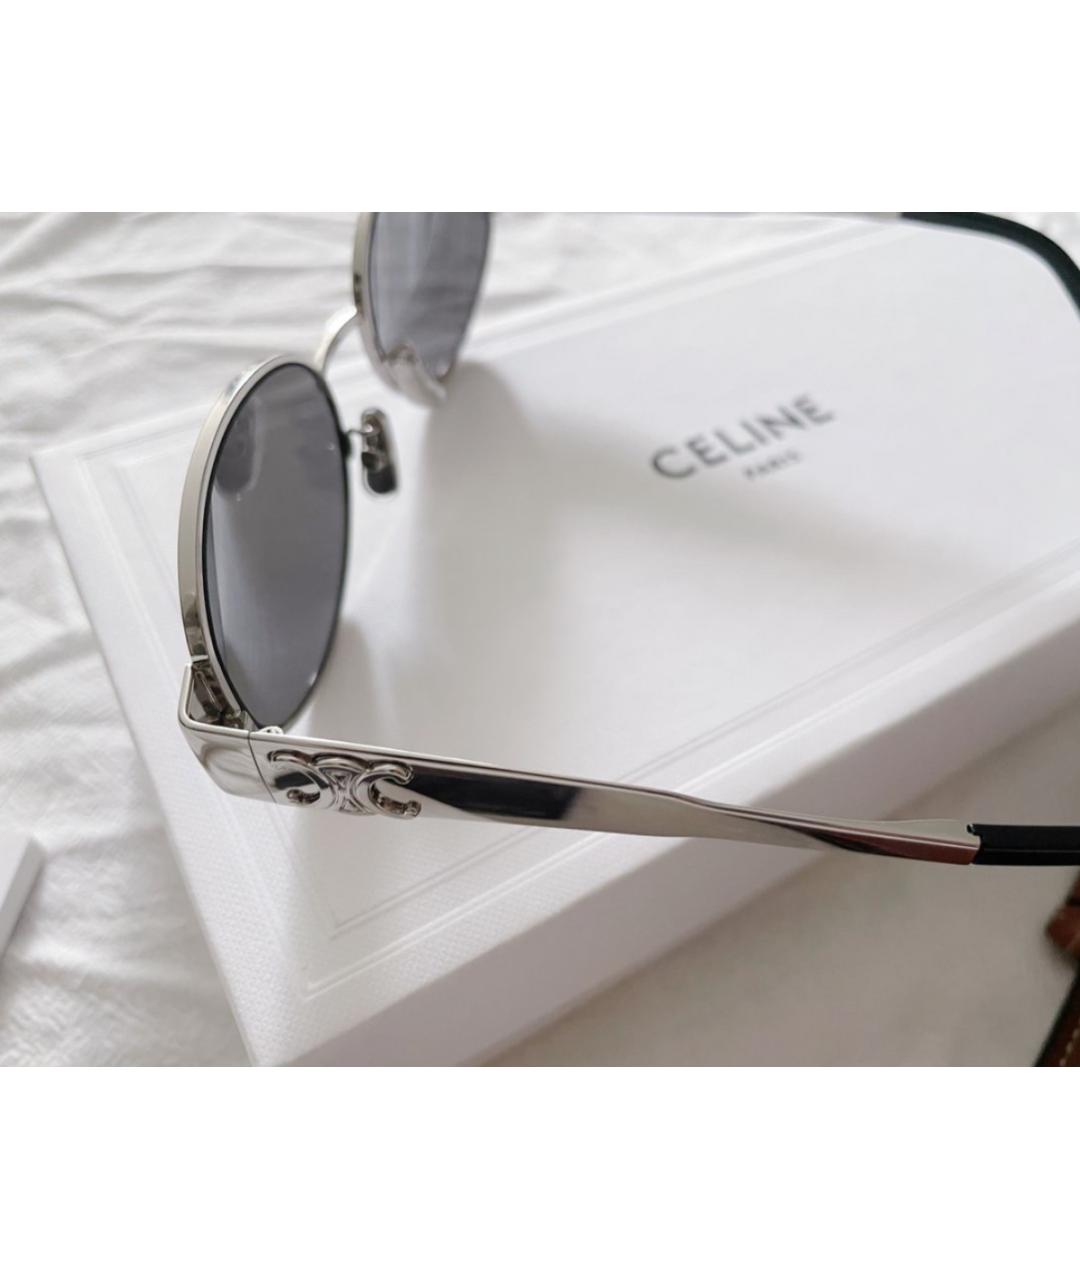 CELINE PRE-OWNED Серебряные металлические солнцезащитные очки, фото 3